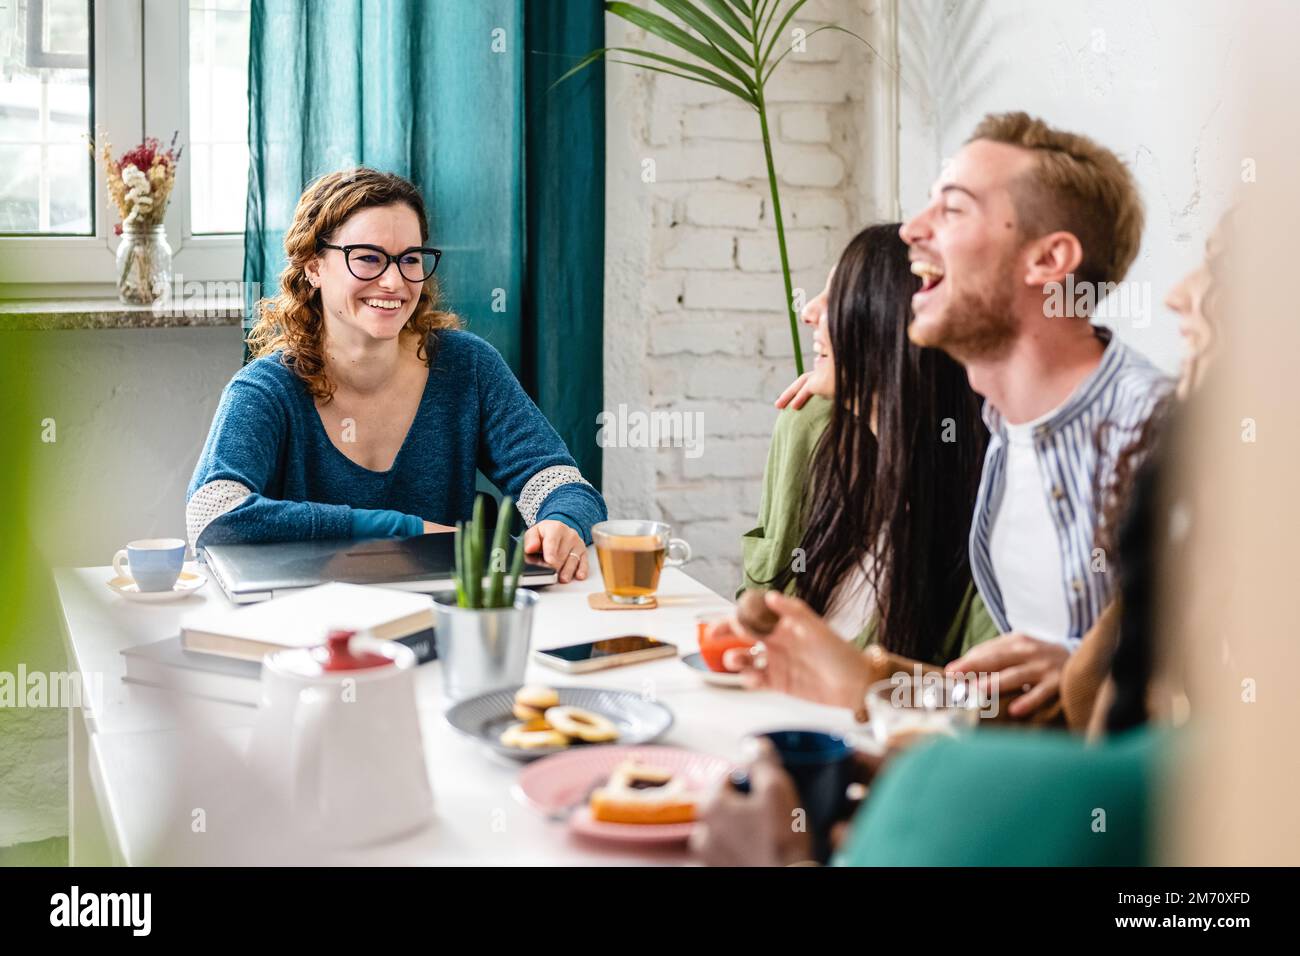 Donna felice sorridente mentre i suoi amici ridono, momenti spensierati di un giovane gruppo di studenti in una caffetteria, prima colazione e brunch in una letteraria Foto Stock